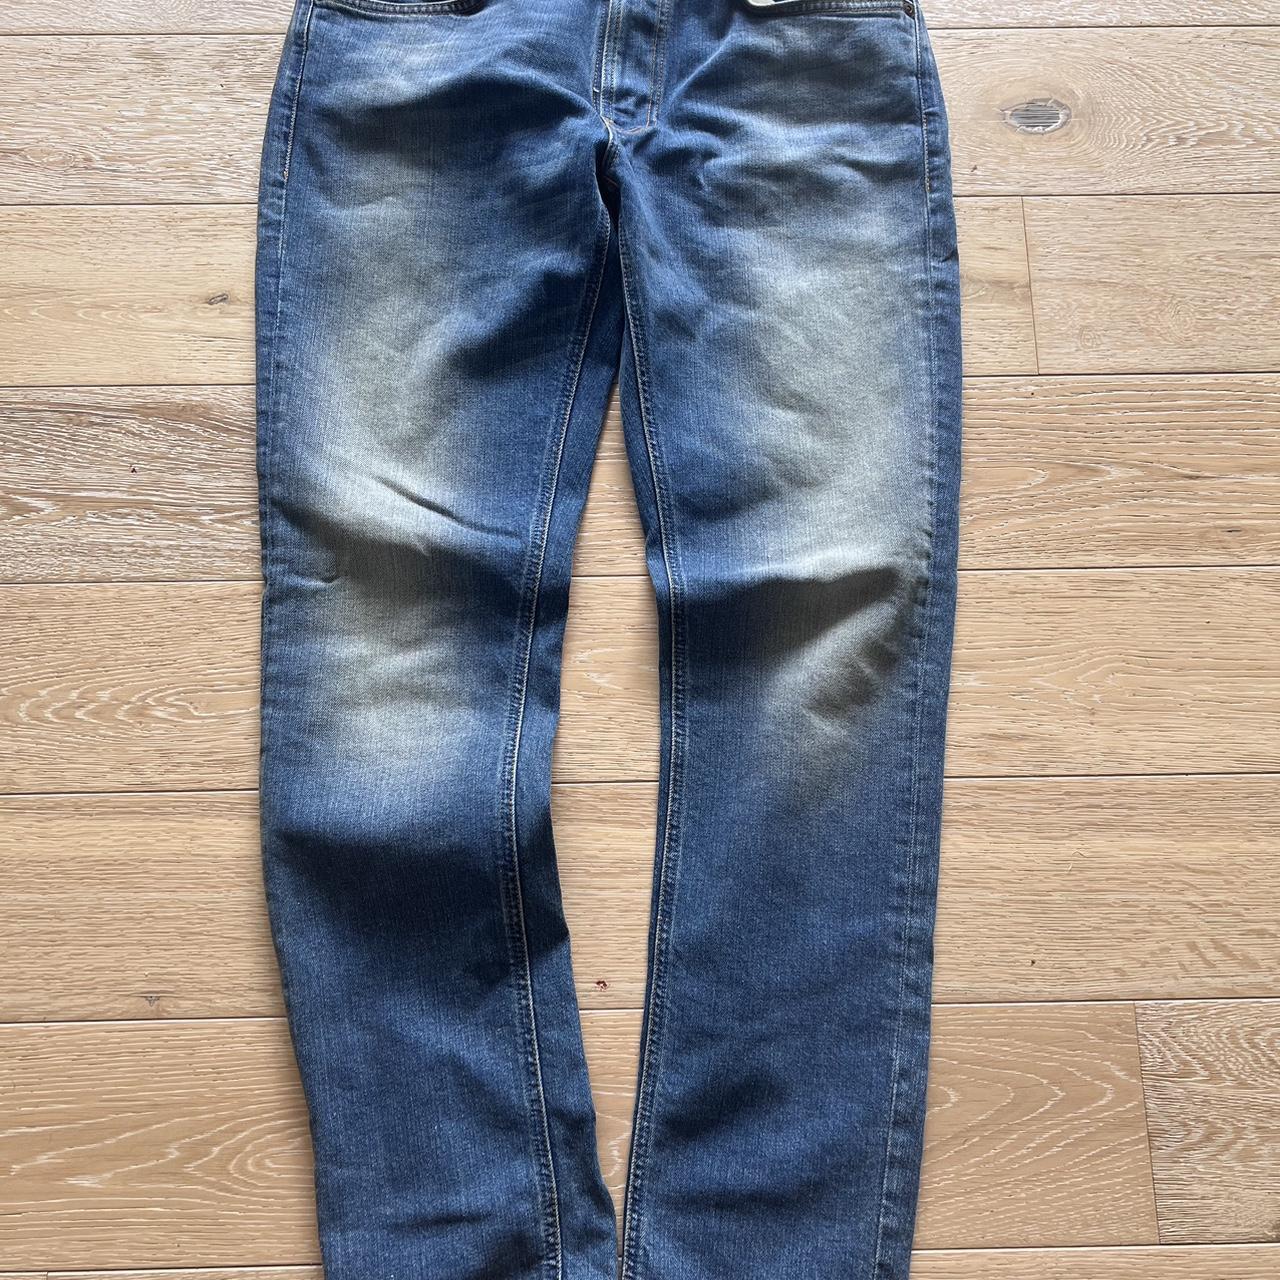 Nudie Jeans Lean Dean slim fit jeans In rebel blue... - Depop